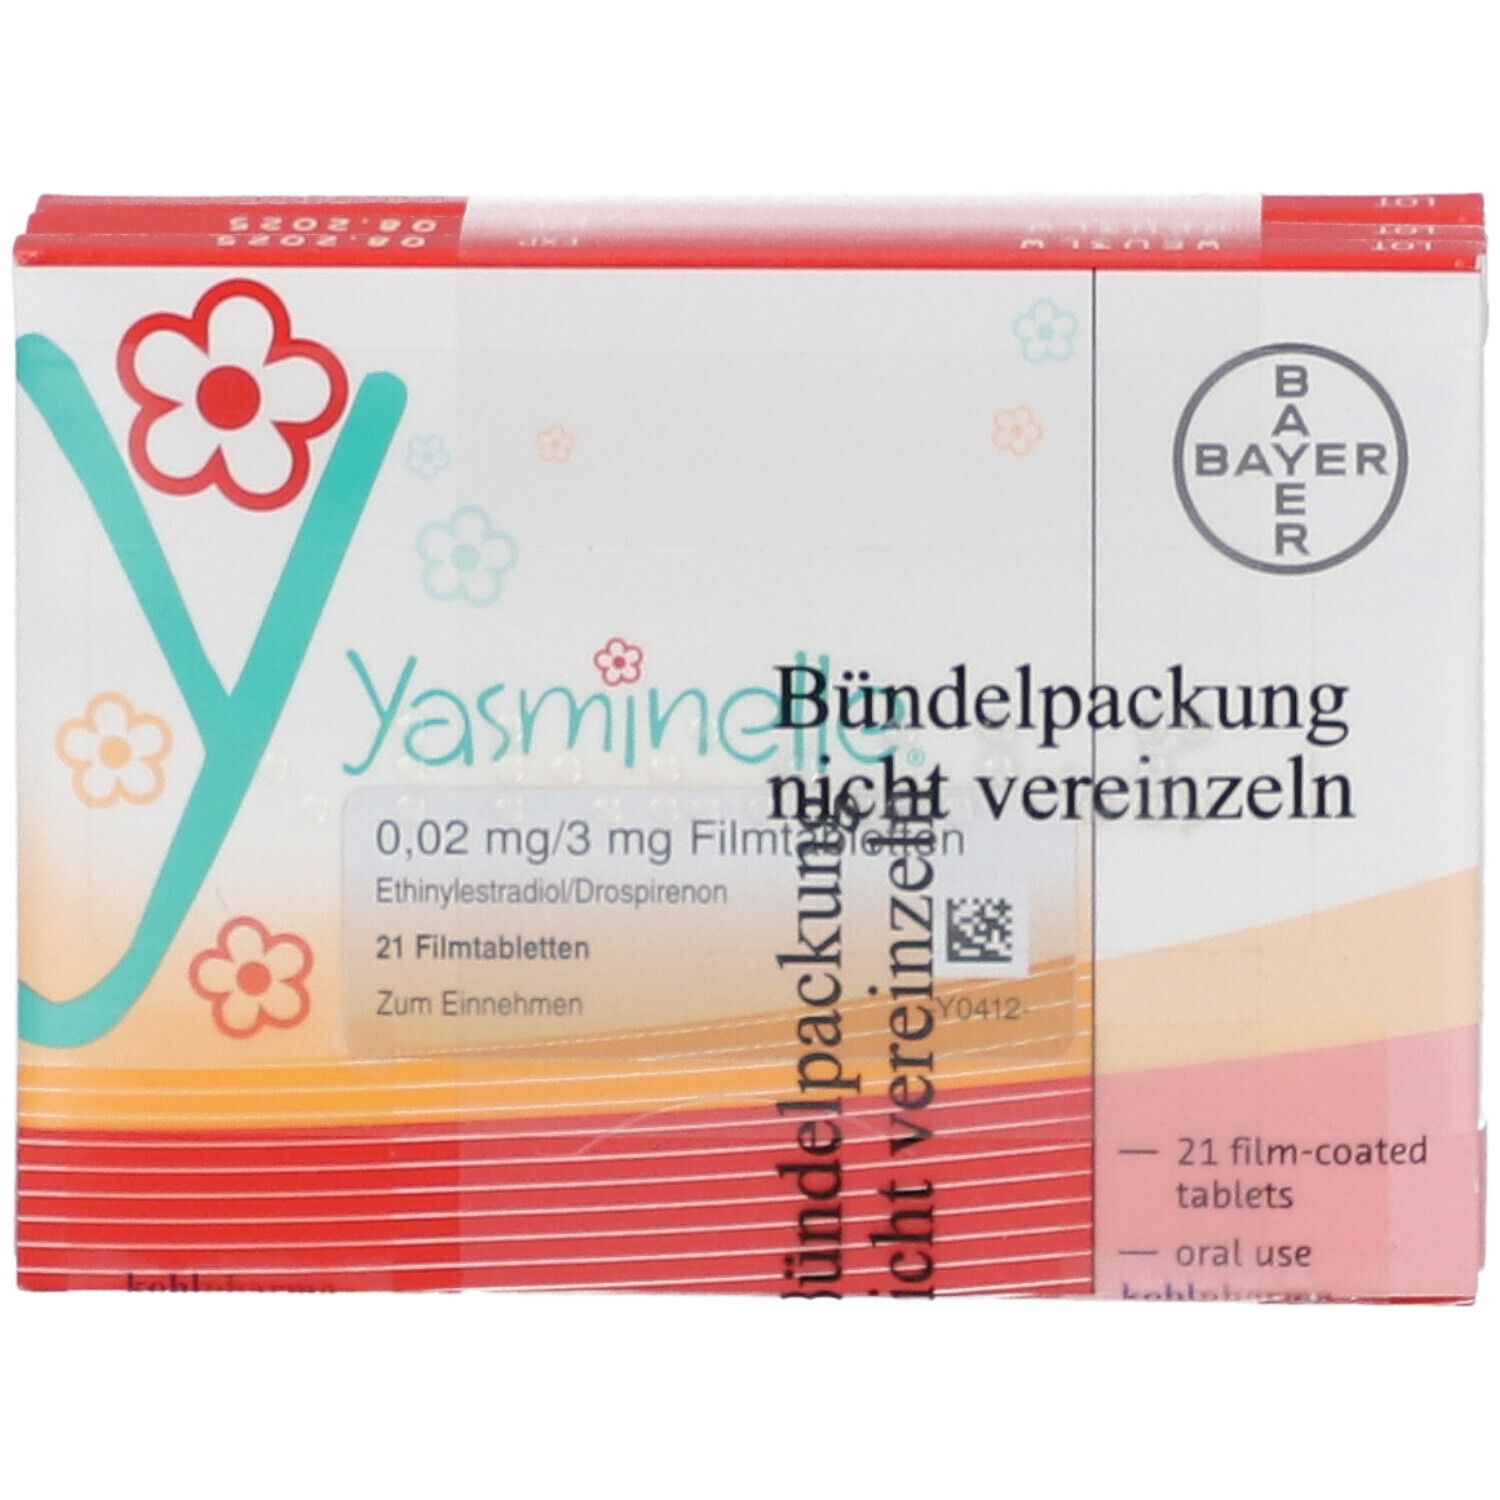 Yasminelle 0,02 mg/3 mg